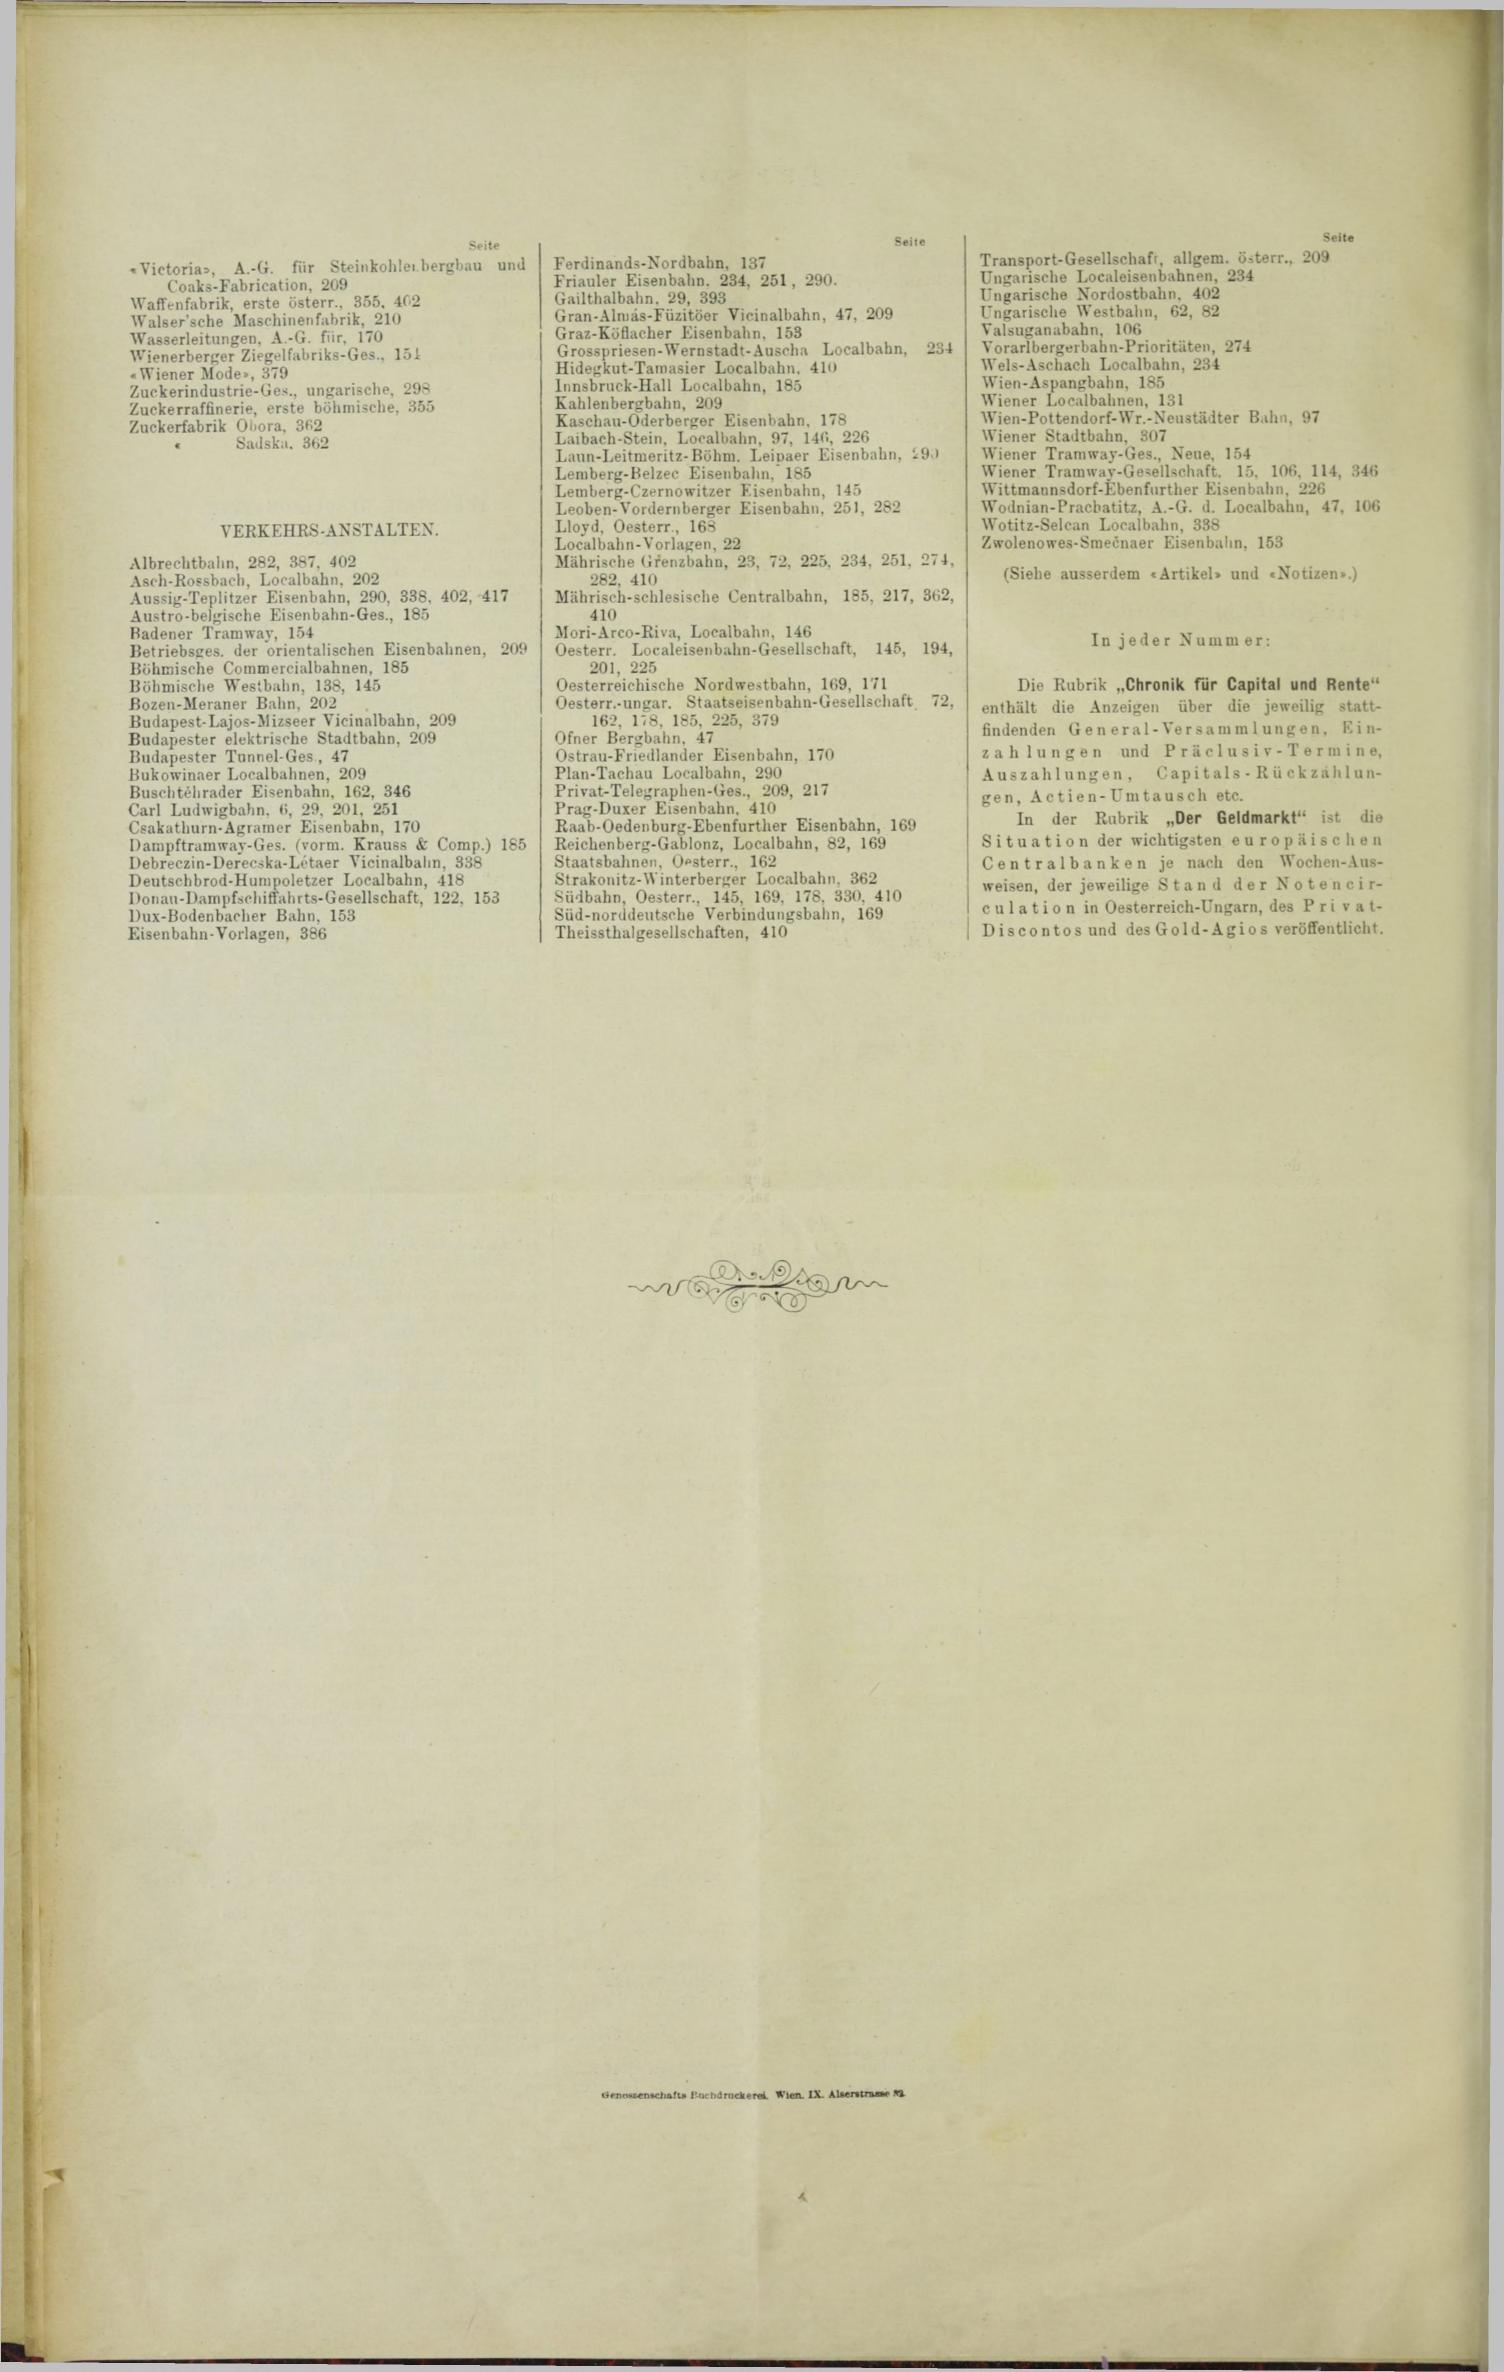 Der Tresor 29.06.1893 - Seite 12